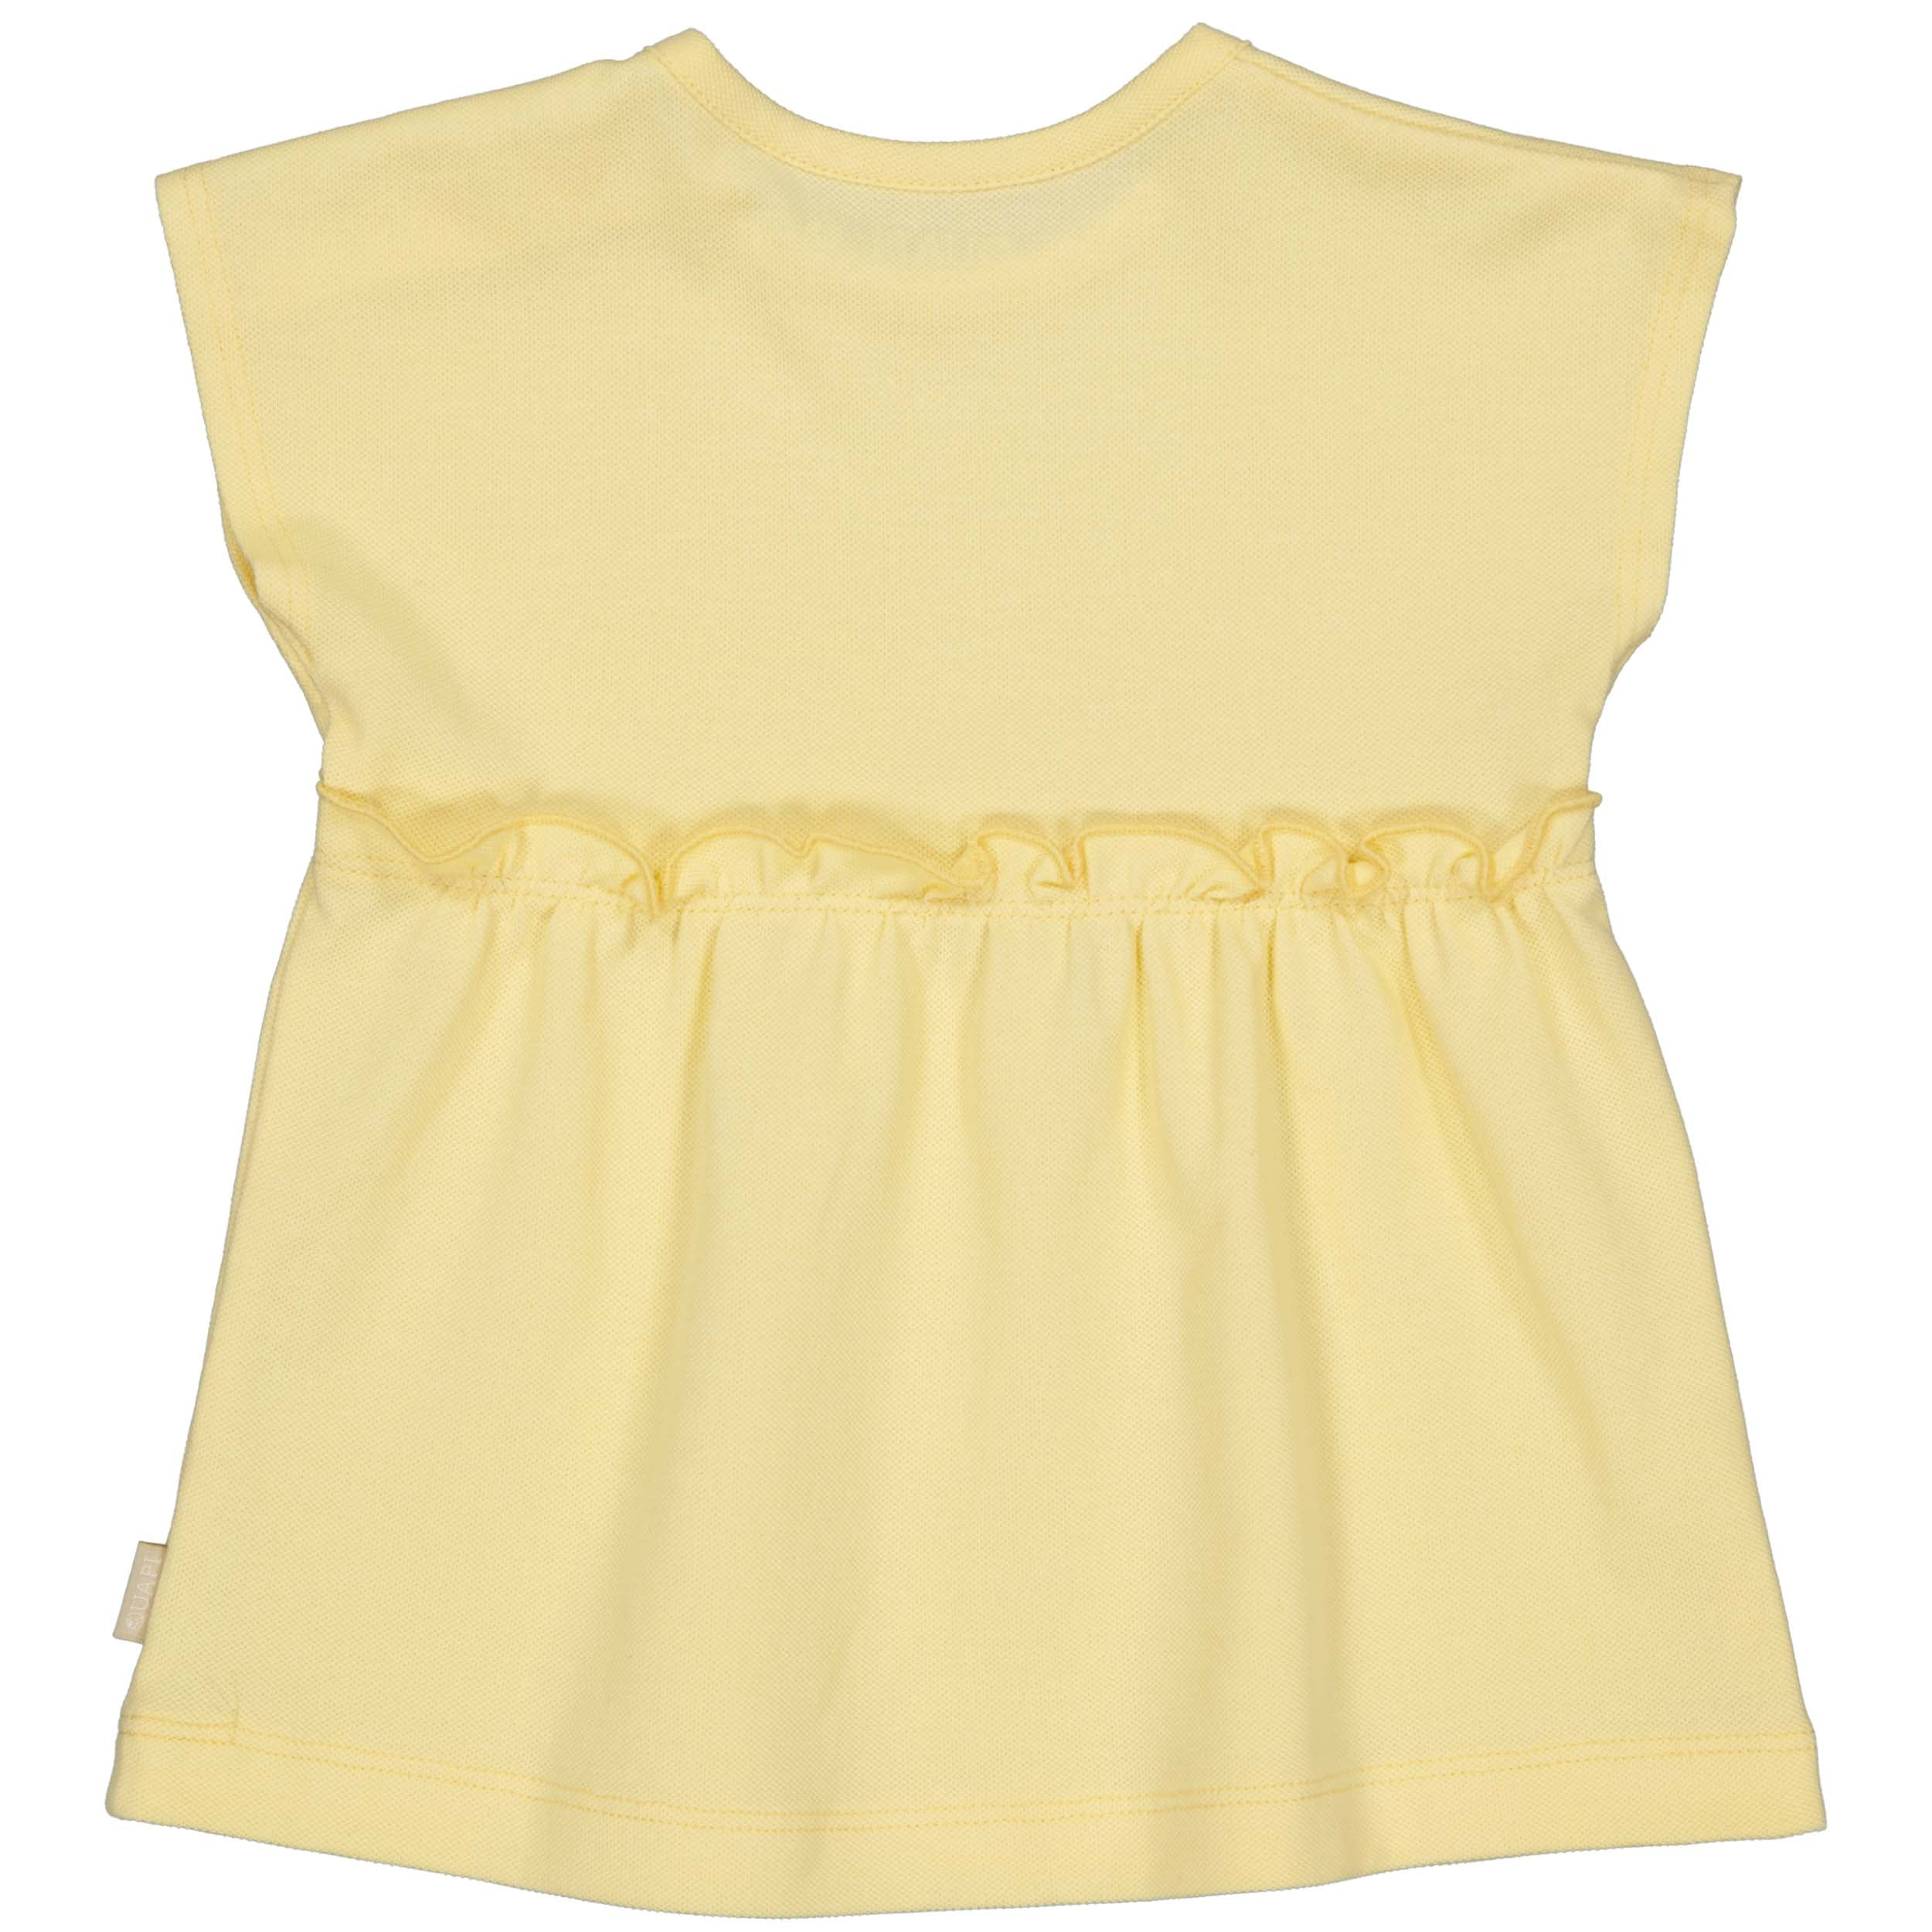 Meisjes Dress Sacha van Quapi Newborn in de kleur Yellow Cream in maat 68.